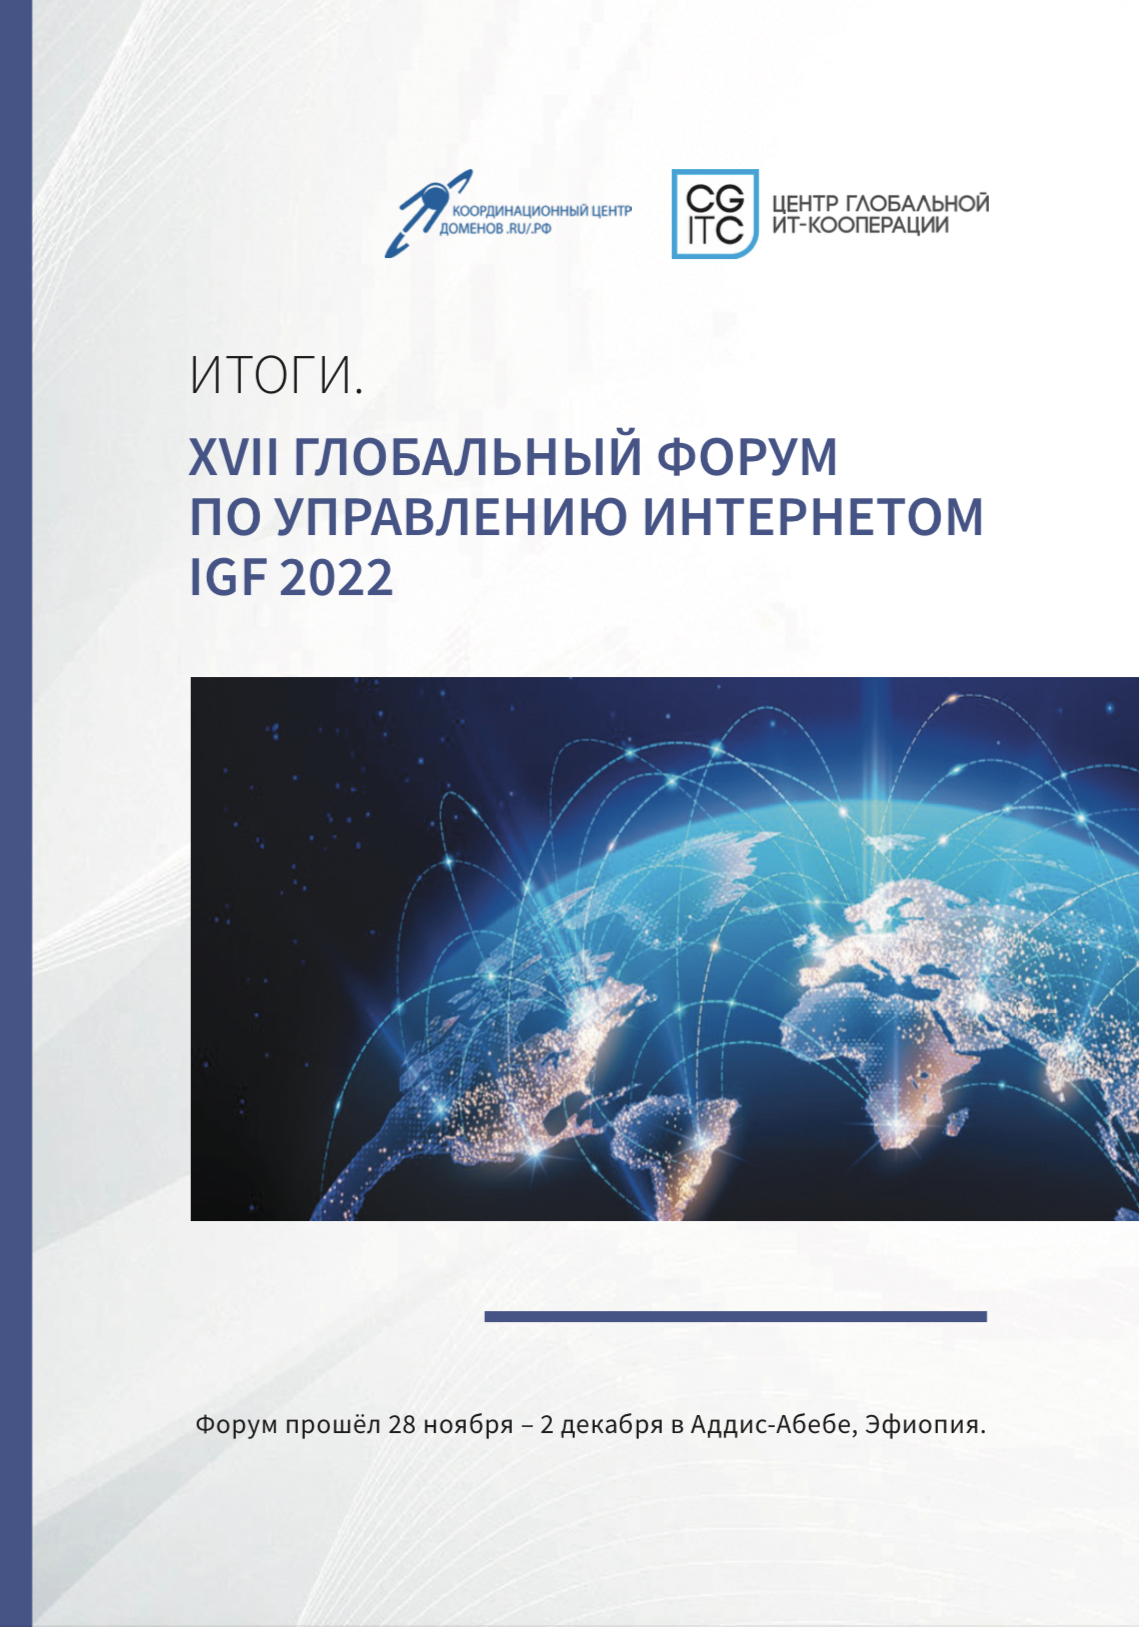 XVII Глобальный форум по управлению интернетом (IGF-2022)